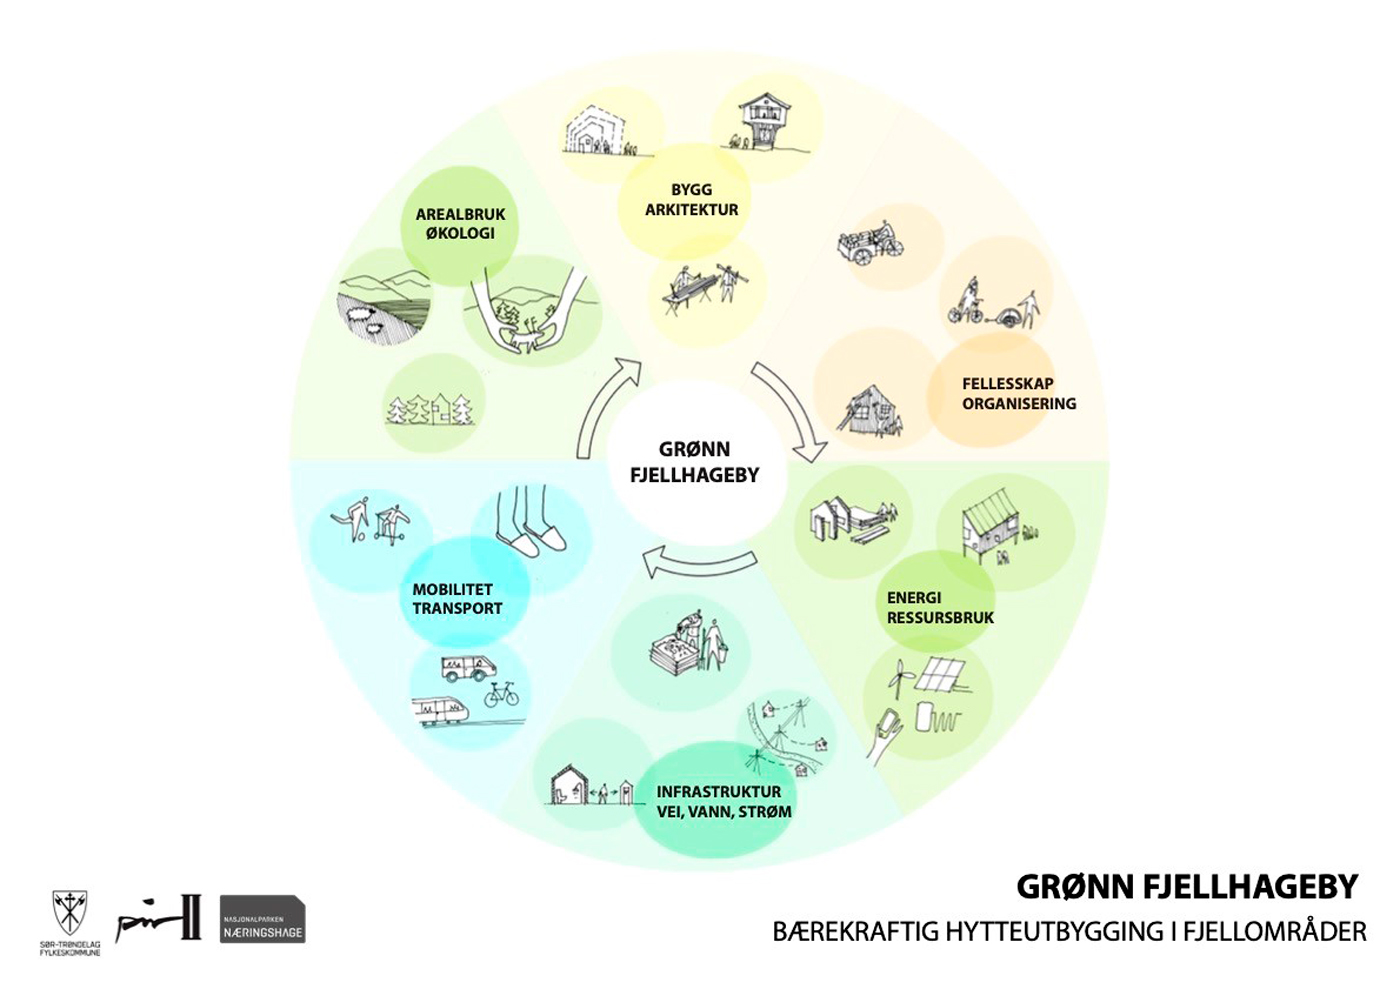 Illustrasjon som viser samenhengen mellom ulike elementer i bærekreftig hytteutbygging: Arkitektur, organisering, energi/ressursbruk, infrastruktur, transport, arealbruk/økologi.